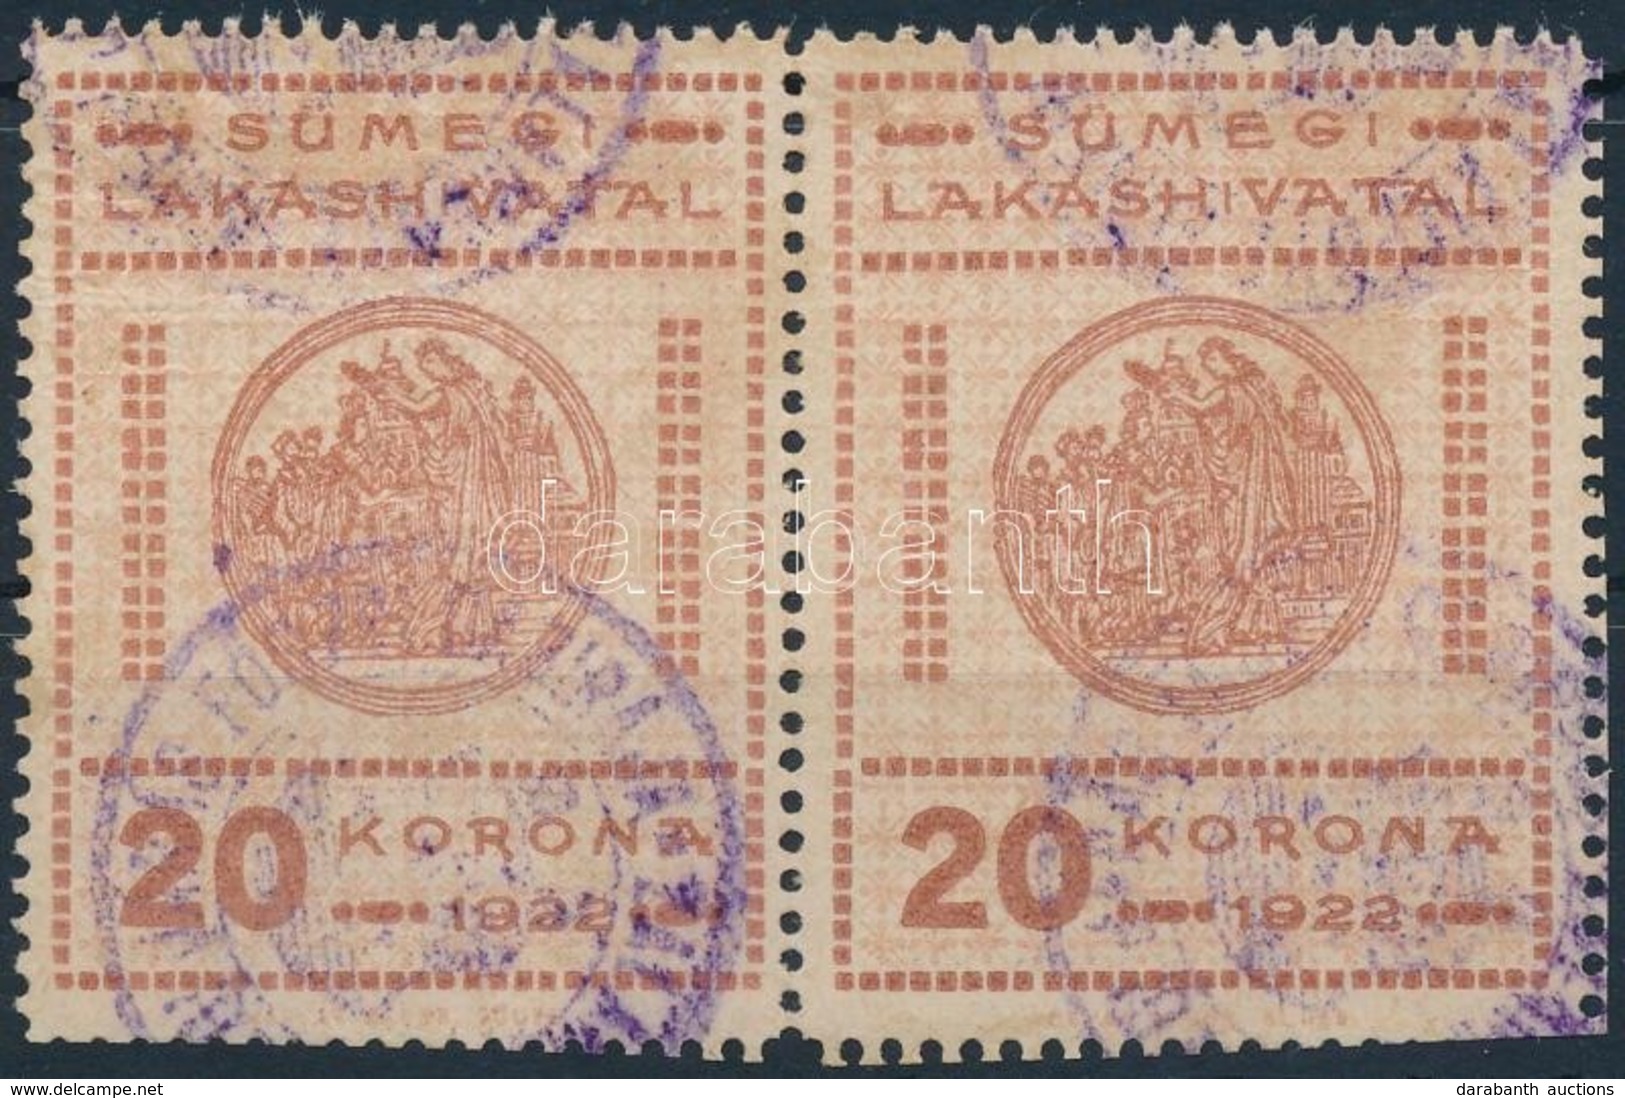 1922 Sümeg Városi Lakáshivatali Bélyeg 20K Pár (22.000) - Sin Clasificación